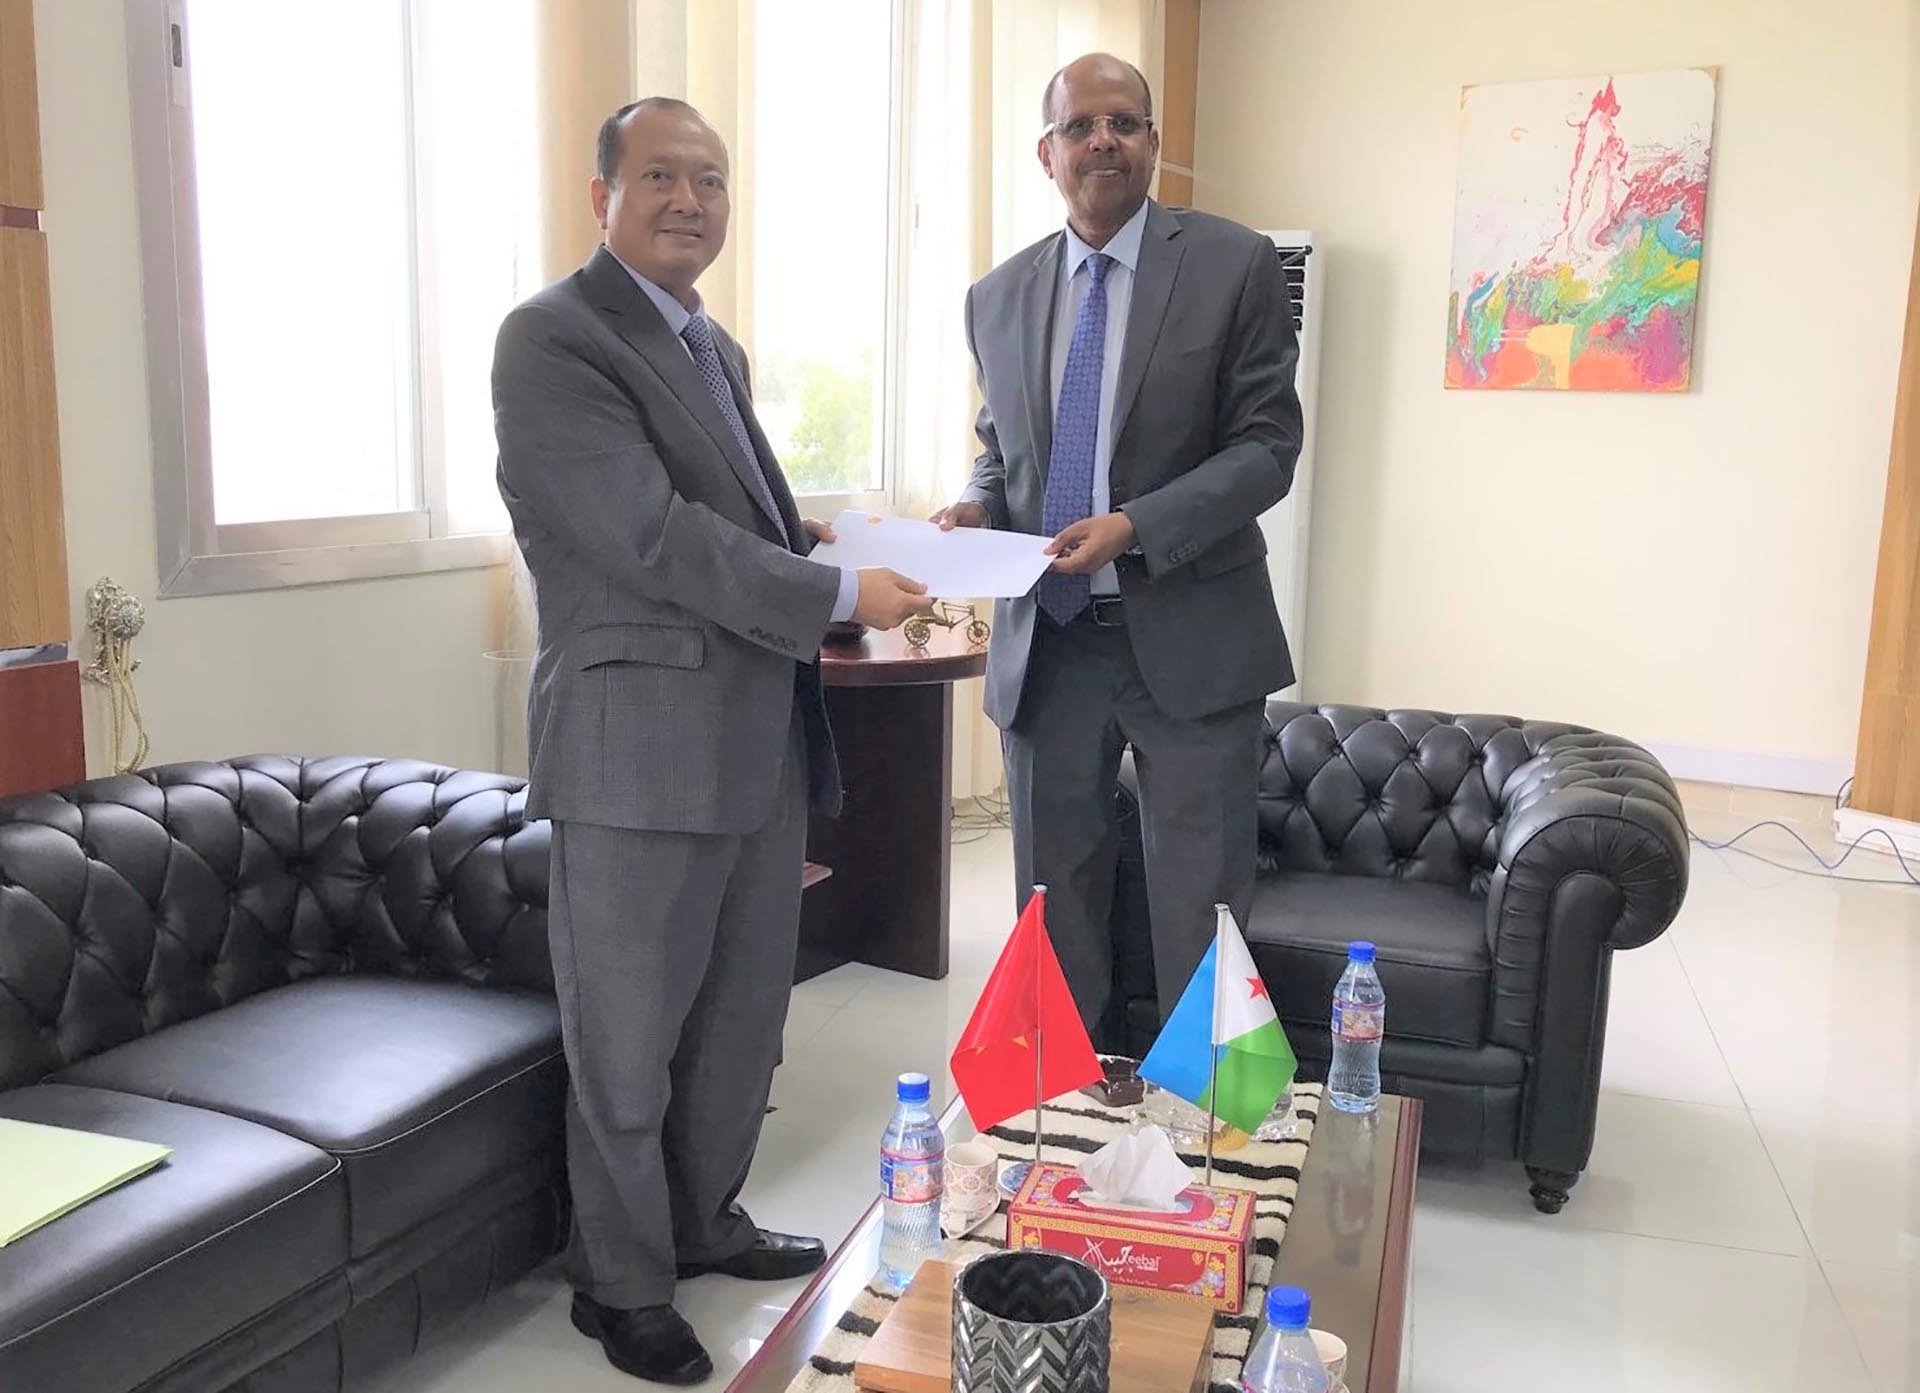 Đại sứ Nguyễn Huy Dũng trình bản sao Thư ủy nhiệm lên Bộ trưởng Bộ Ngoại giao và Hợp tác Quốc tế Mahmoud Ali Youssouf.